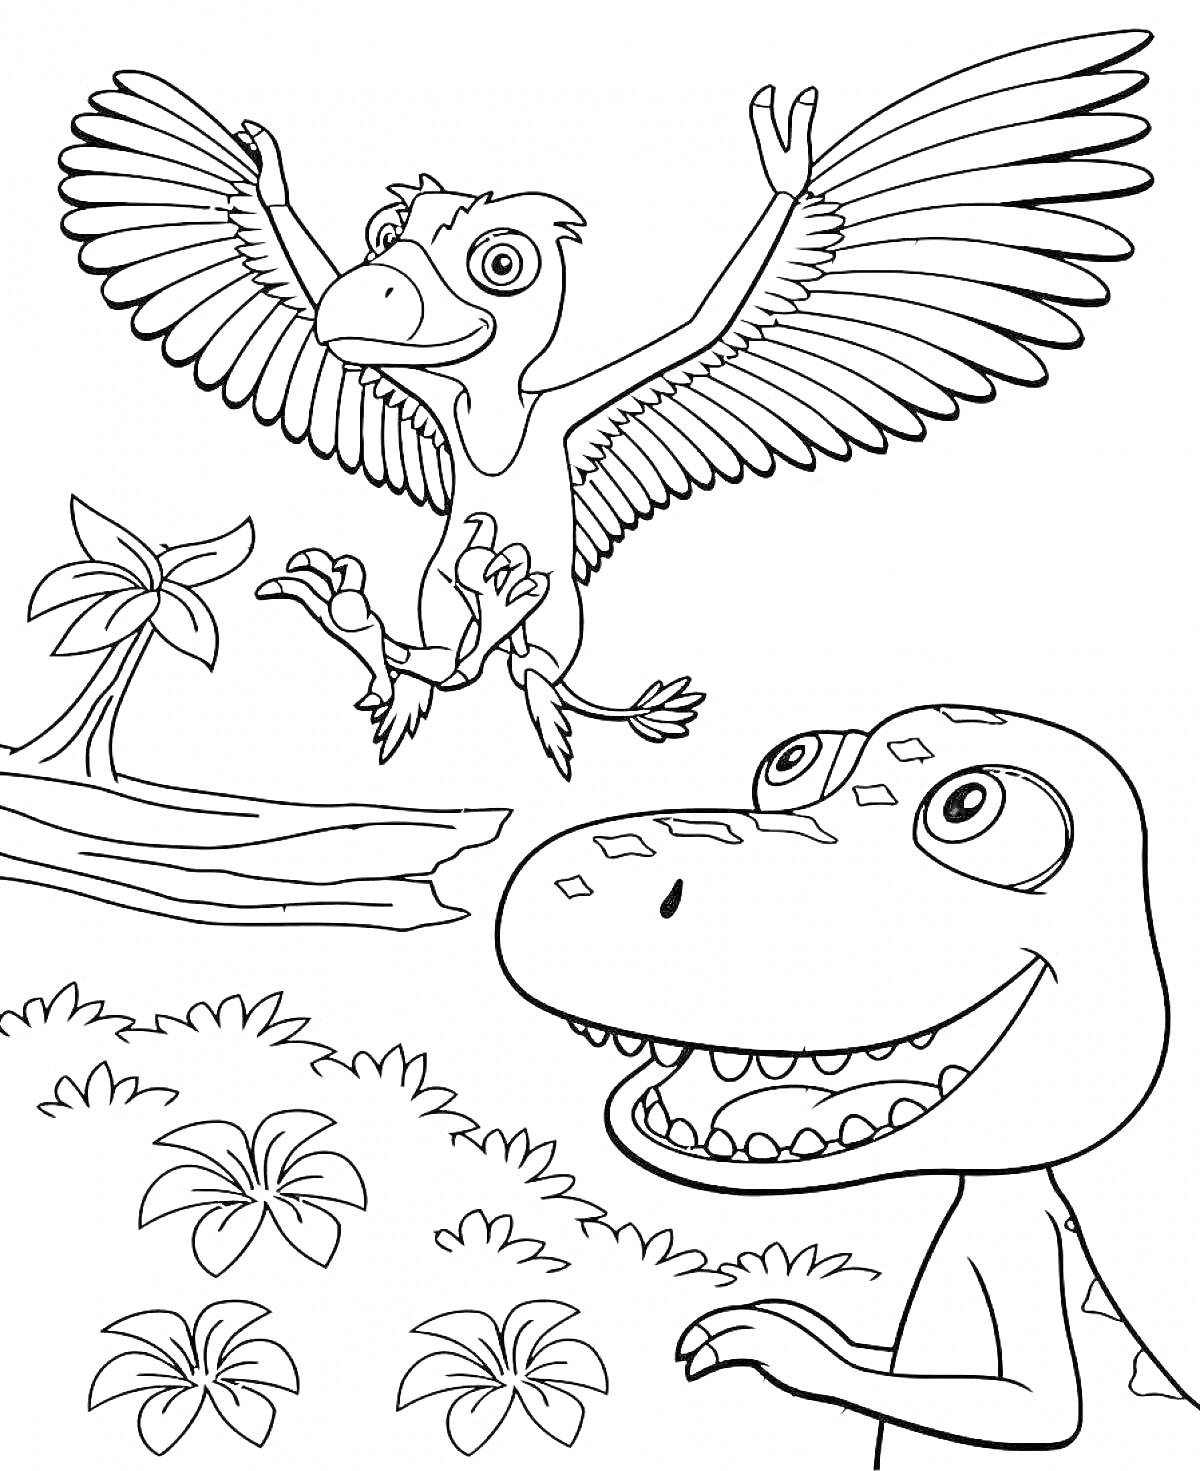 Летающий и улыбающийся динозавры на фоне растений и пальмы